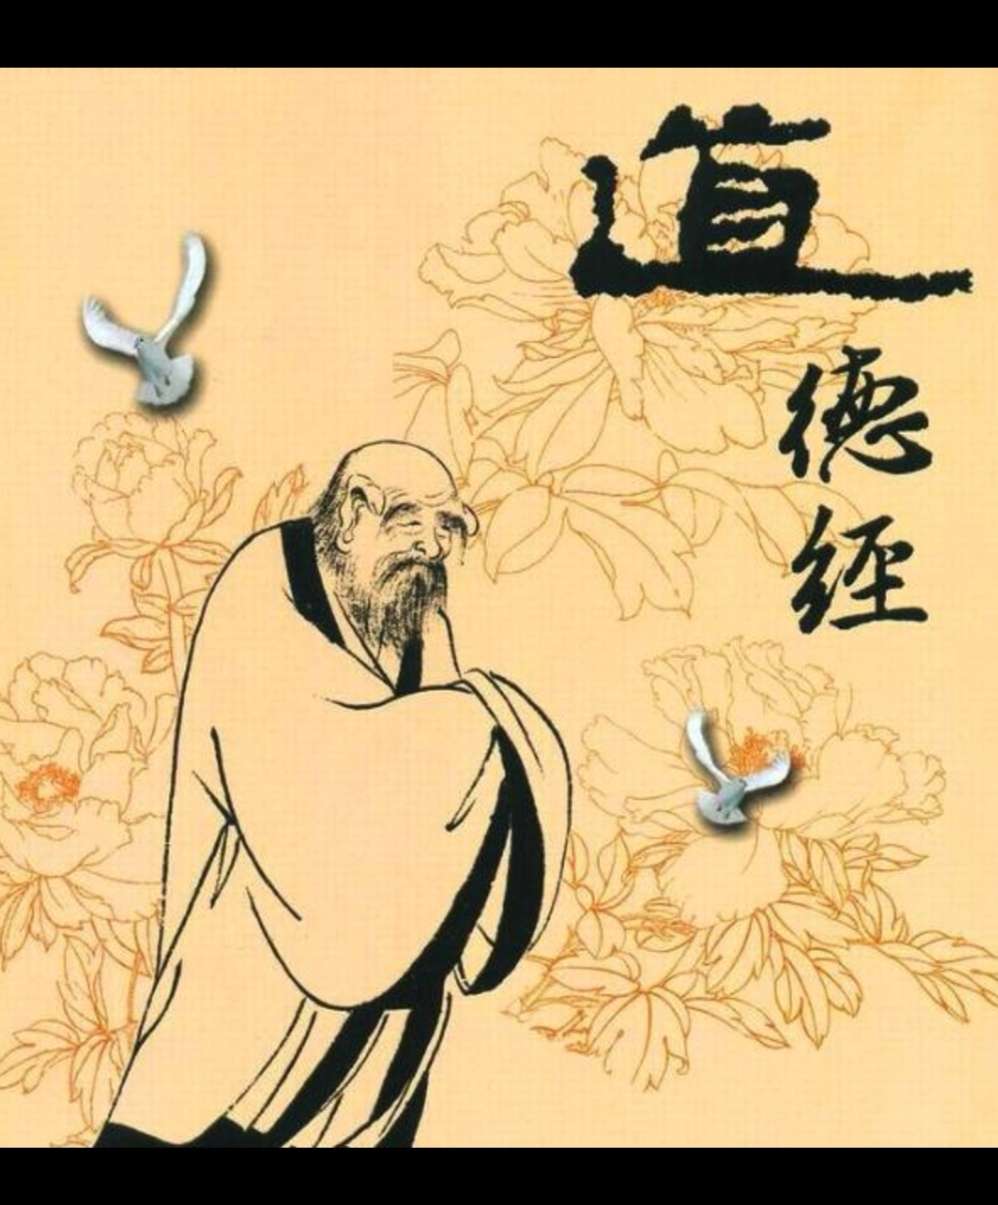 儒家道家佛家思想_孔孟的儒家思想老庄的道家思想是中国智慧的组成部分_儒家道家佛家思想对比